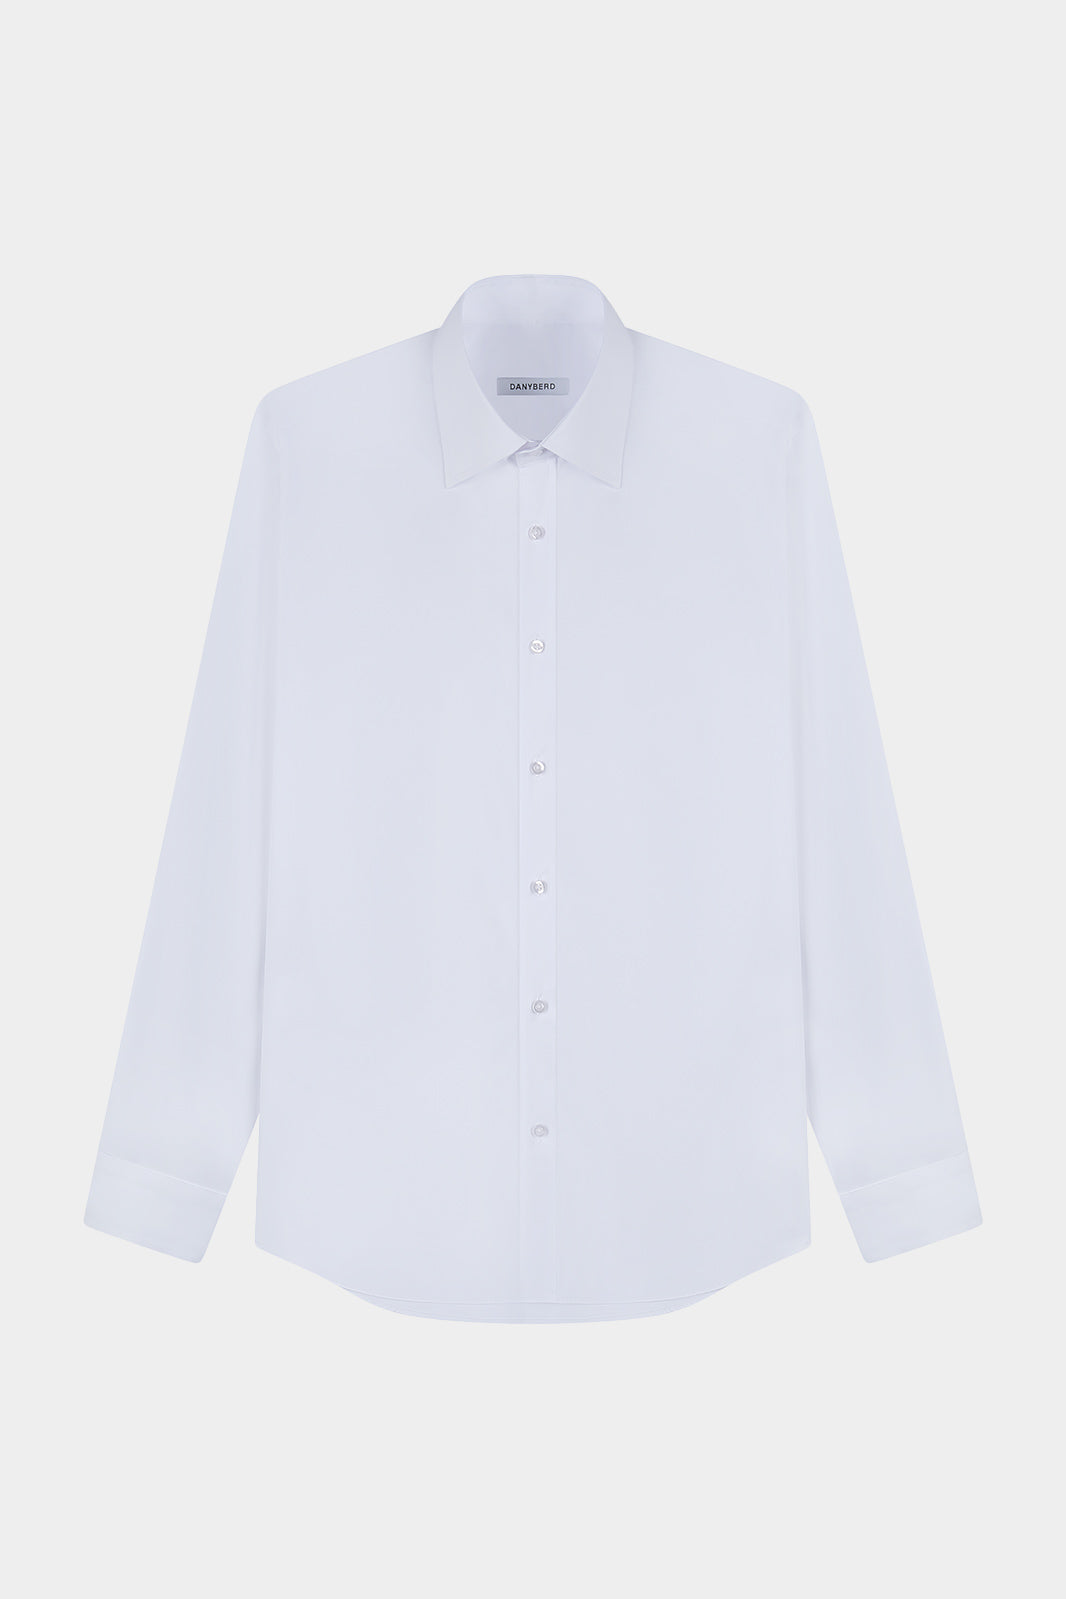 Vue de face d'une chemise blanche à manches longues avec col français et boutons blancs